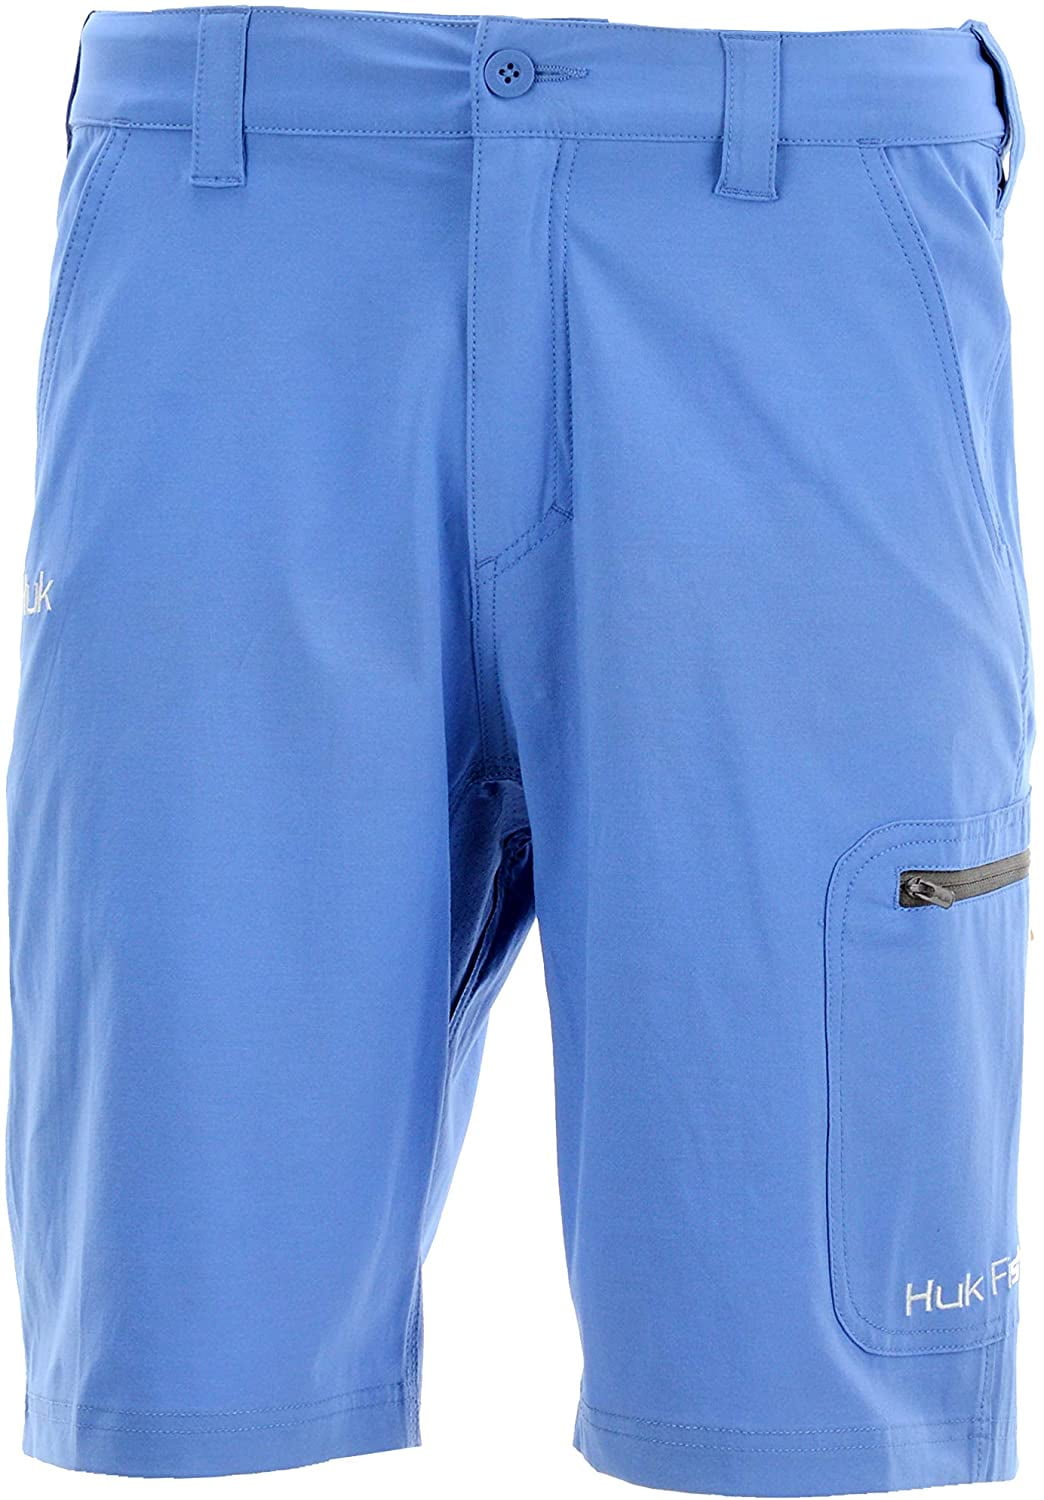 huk men's next level shorts fishing 3 zippered pocket 10.5" short blue large 